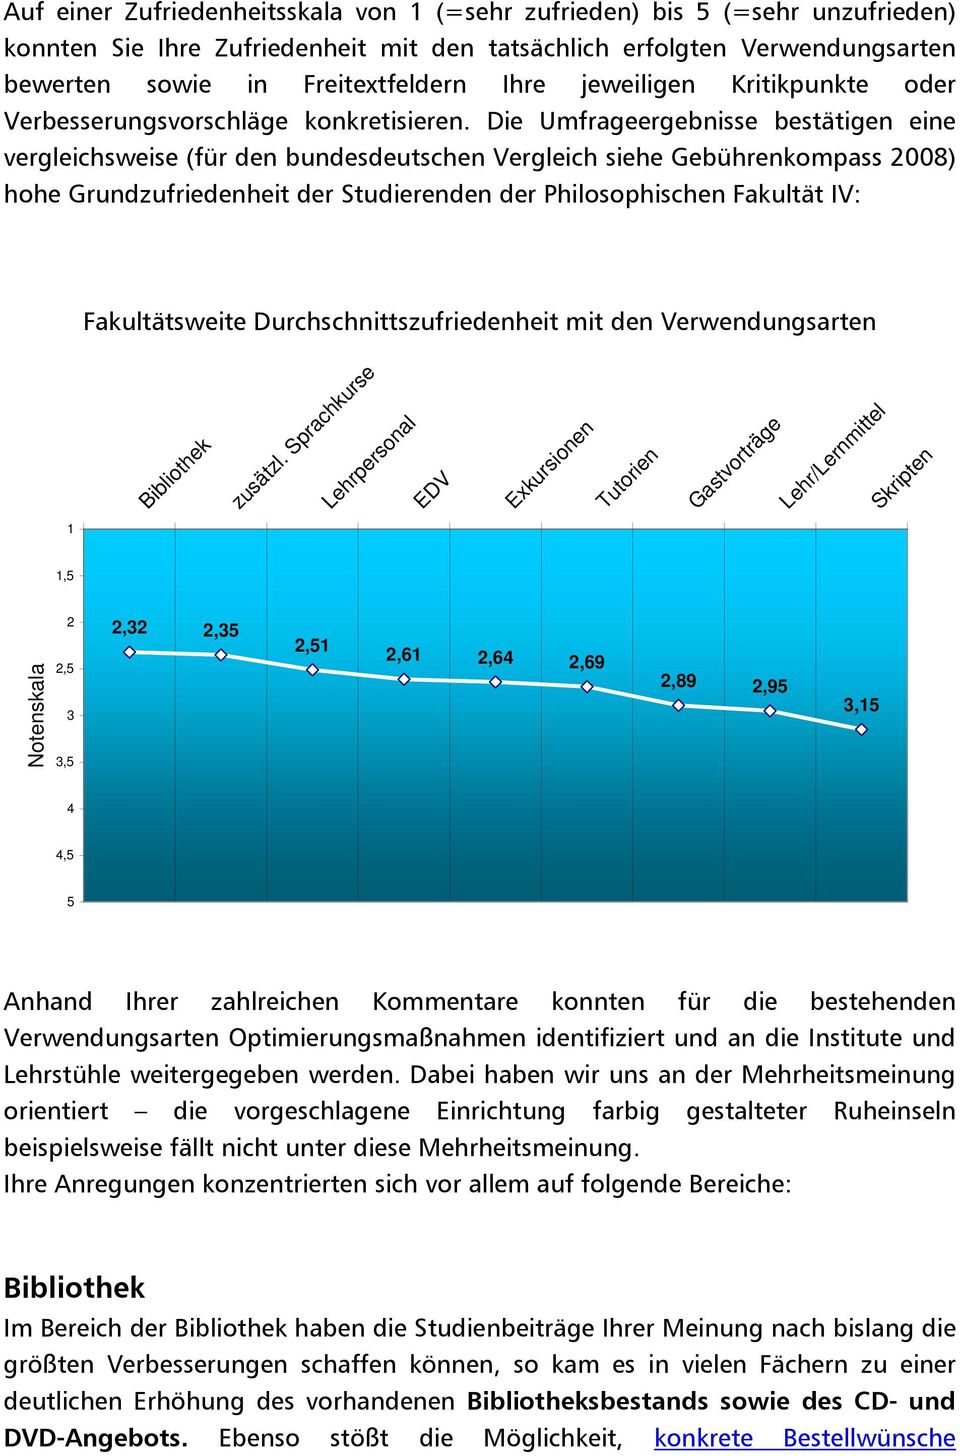 Die Umfrageergebnisse bestätigen eine vergleichsweise (für den bundesdeutschen Vergleich siehe Gebührenkompass 2008) hohe Grundzufriedenheit der Studierenden der Philosophischen Fakultät IV: